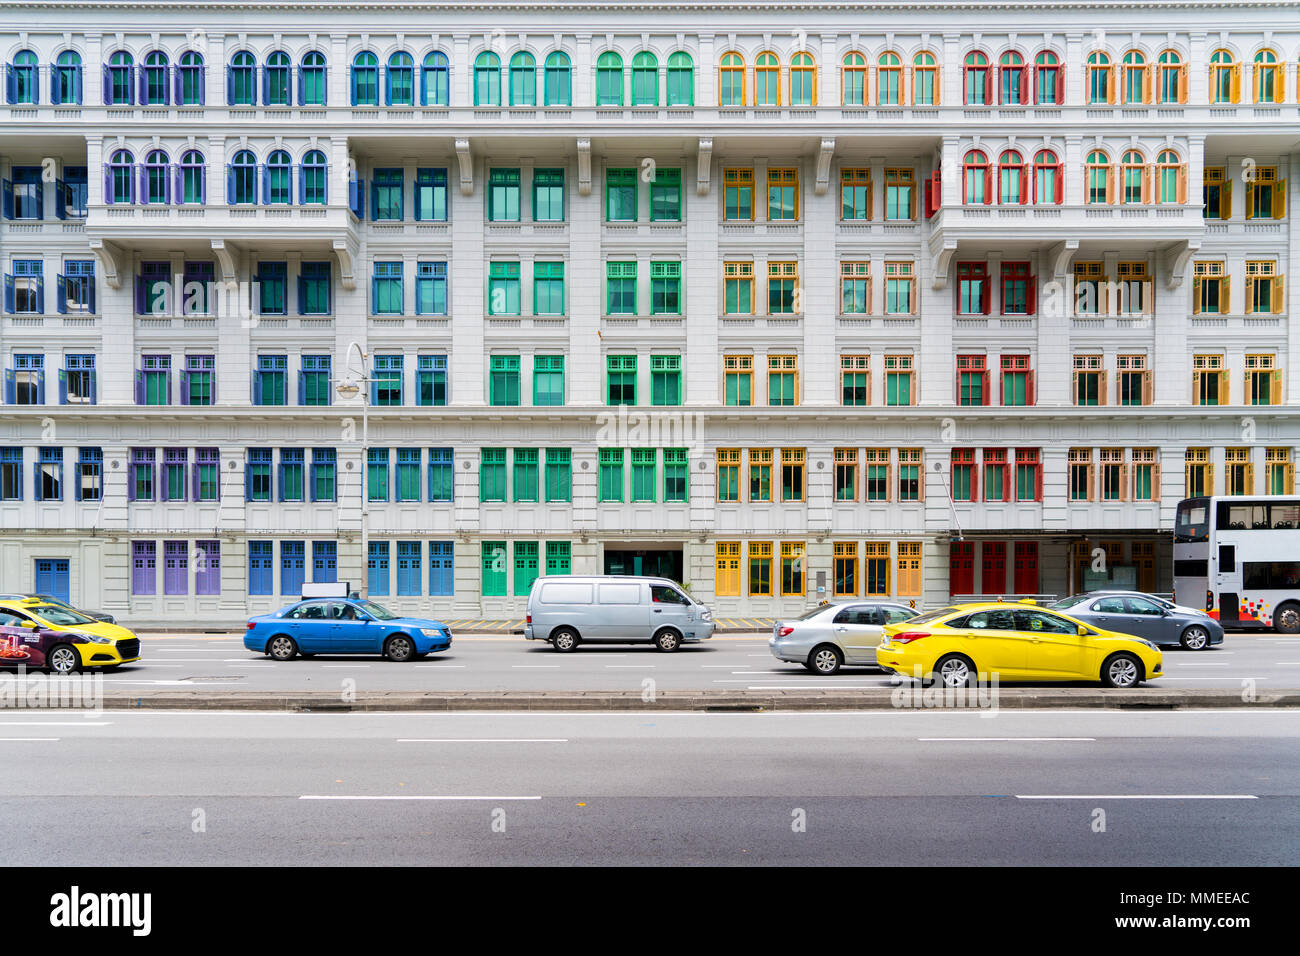 Farbenfrohe Gebäude windows in Singapur. Neoklassizistischen Stil Gebäude mit bunten Fenstern in Singapur. Stockfoto